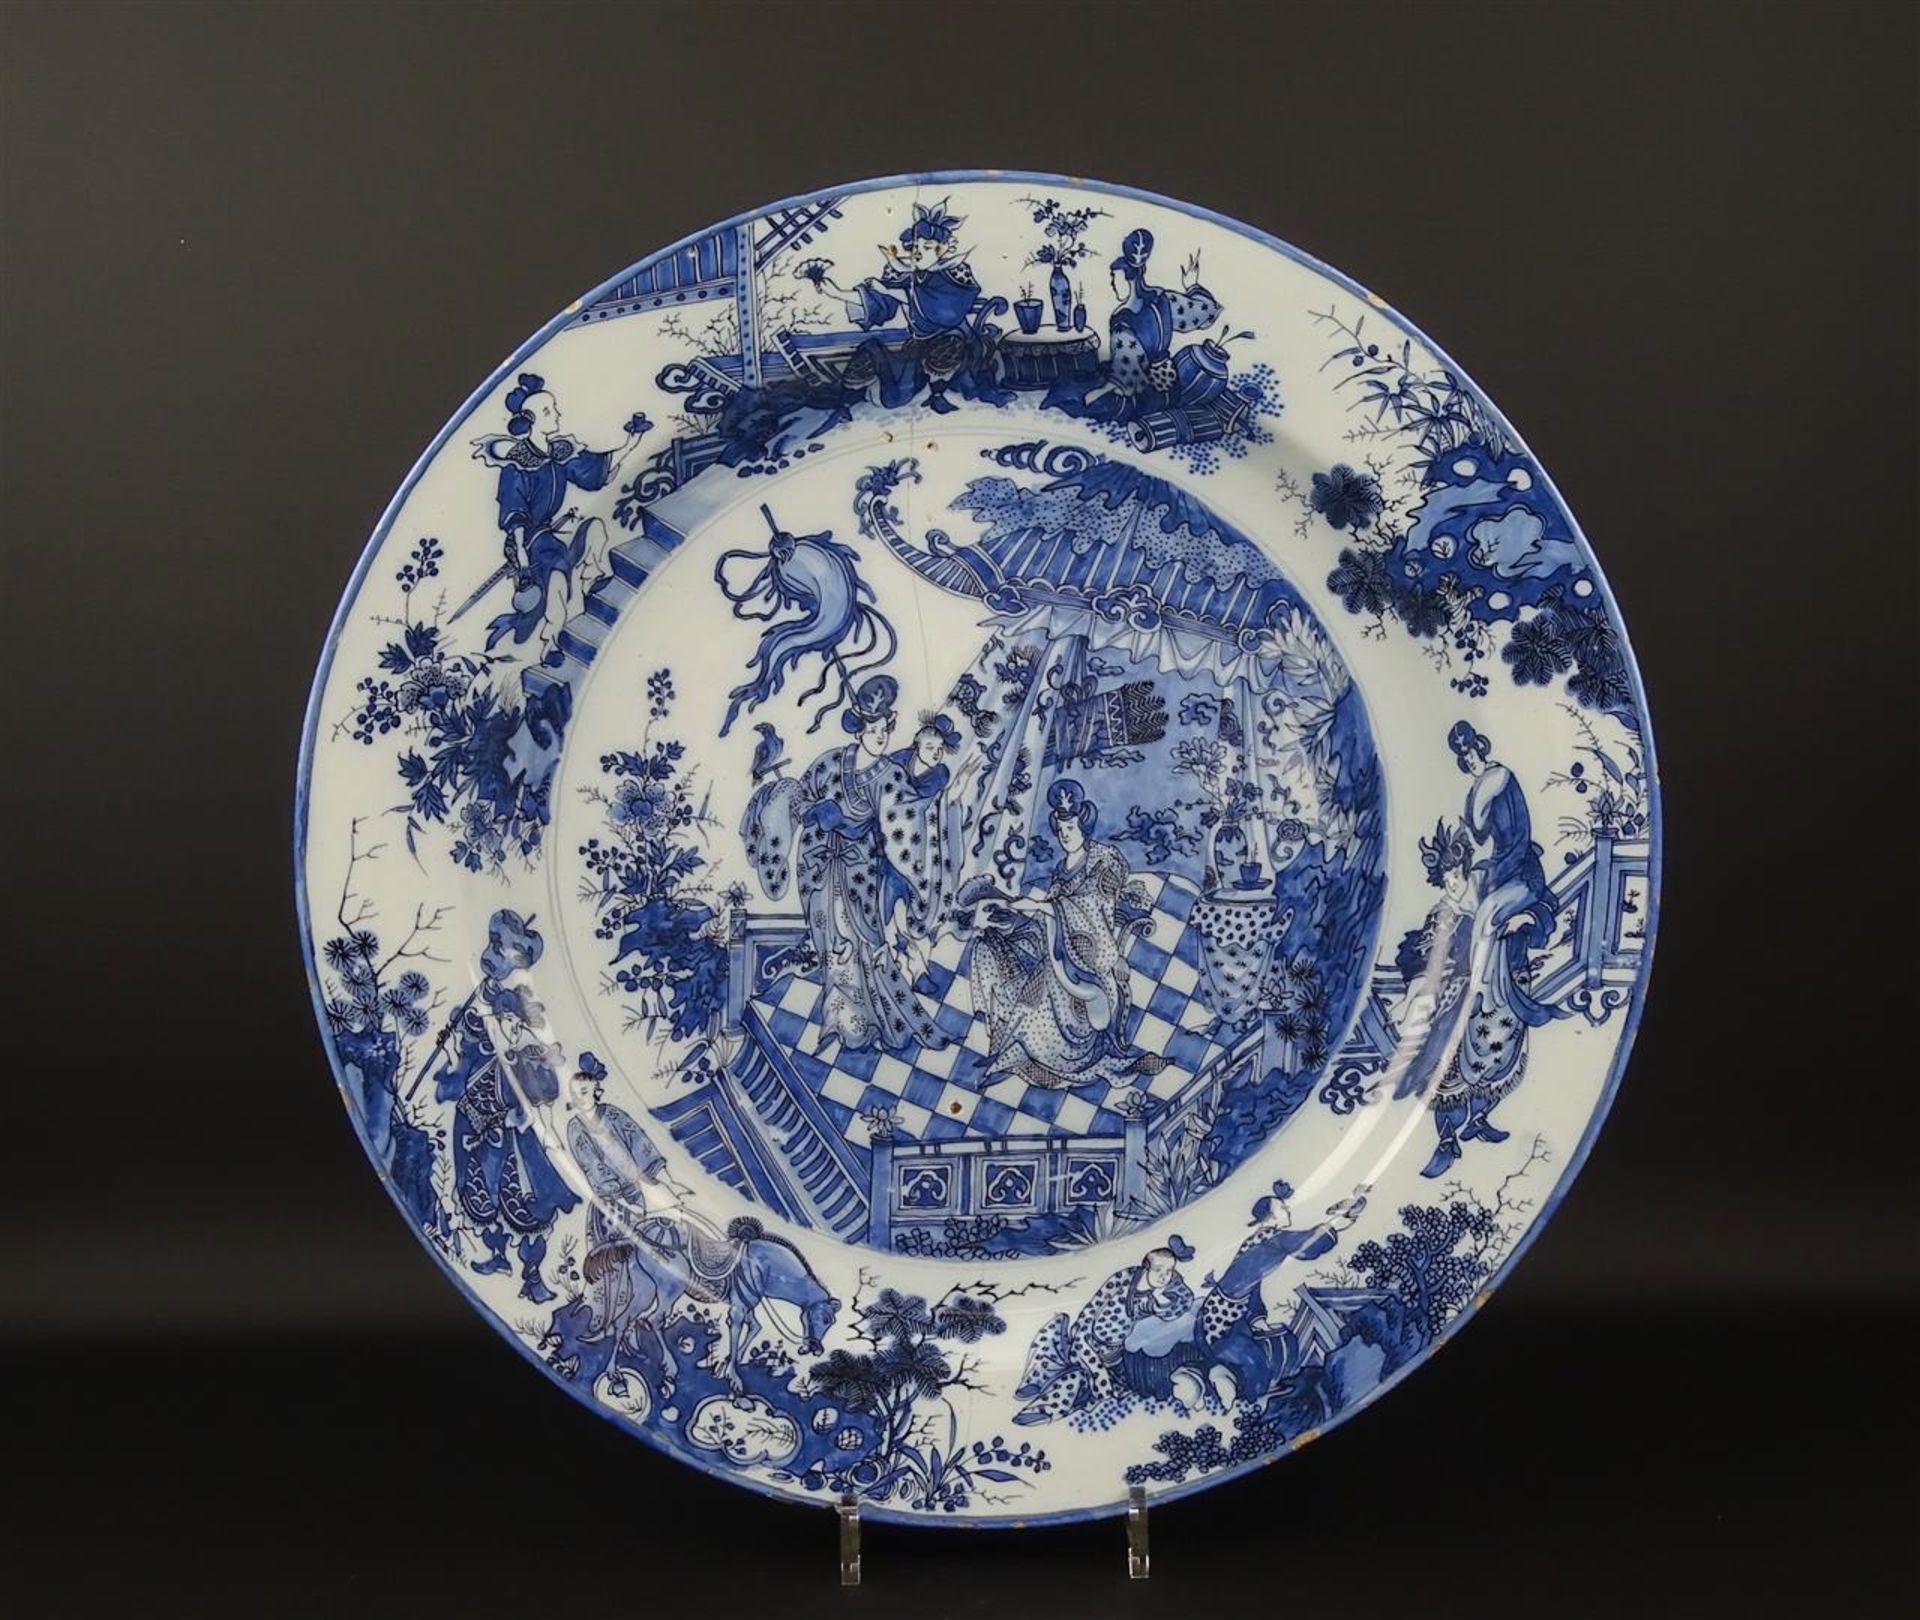 kapitale Delfts aardewerk schotel met blauw chinoiserie decor van hofdames omgeven door diverse